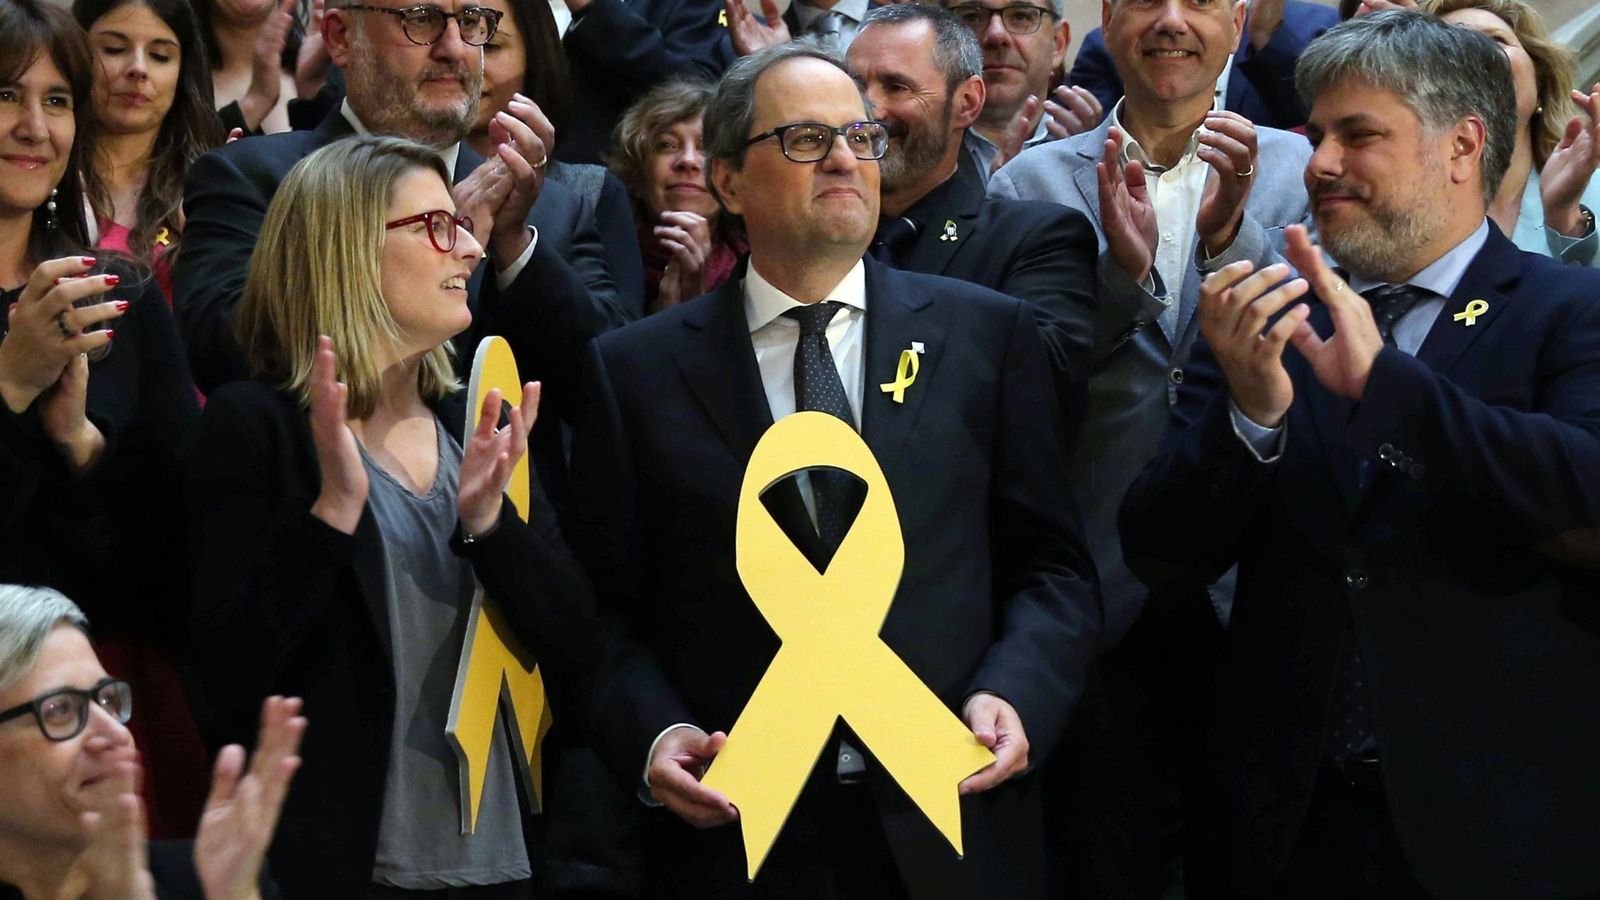 Foto: El nuevo presidente de la Generalitat, Quim Torra, posa con un lazo amarillo en recuerdo de los politicos encarcelados. (EFE)